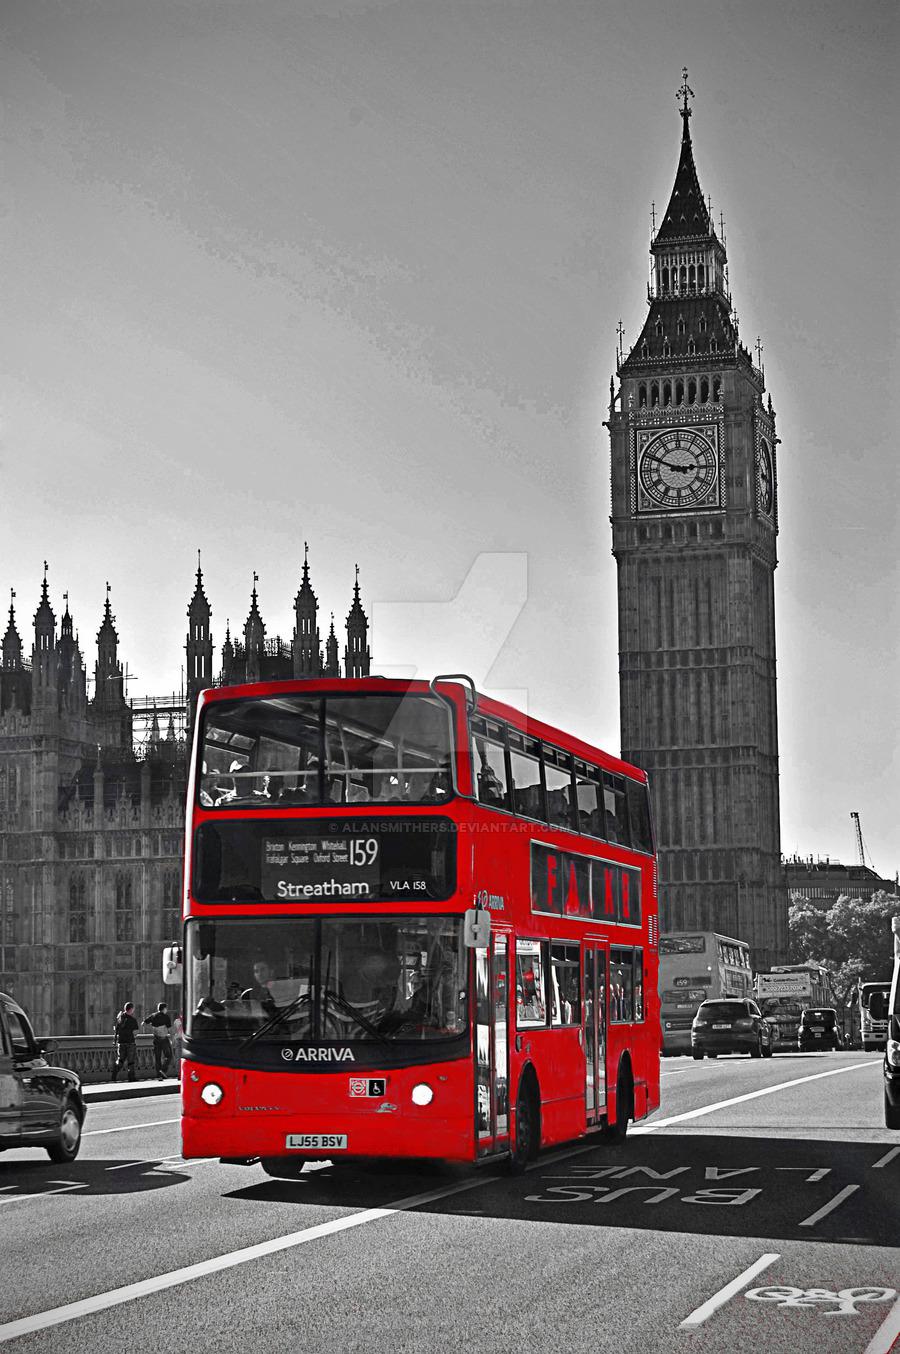 London Bus, wallpaper collection, 900x1354 EM